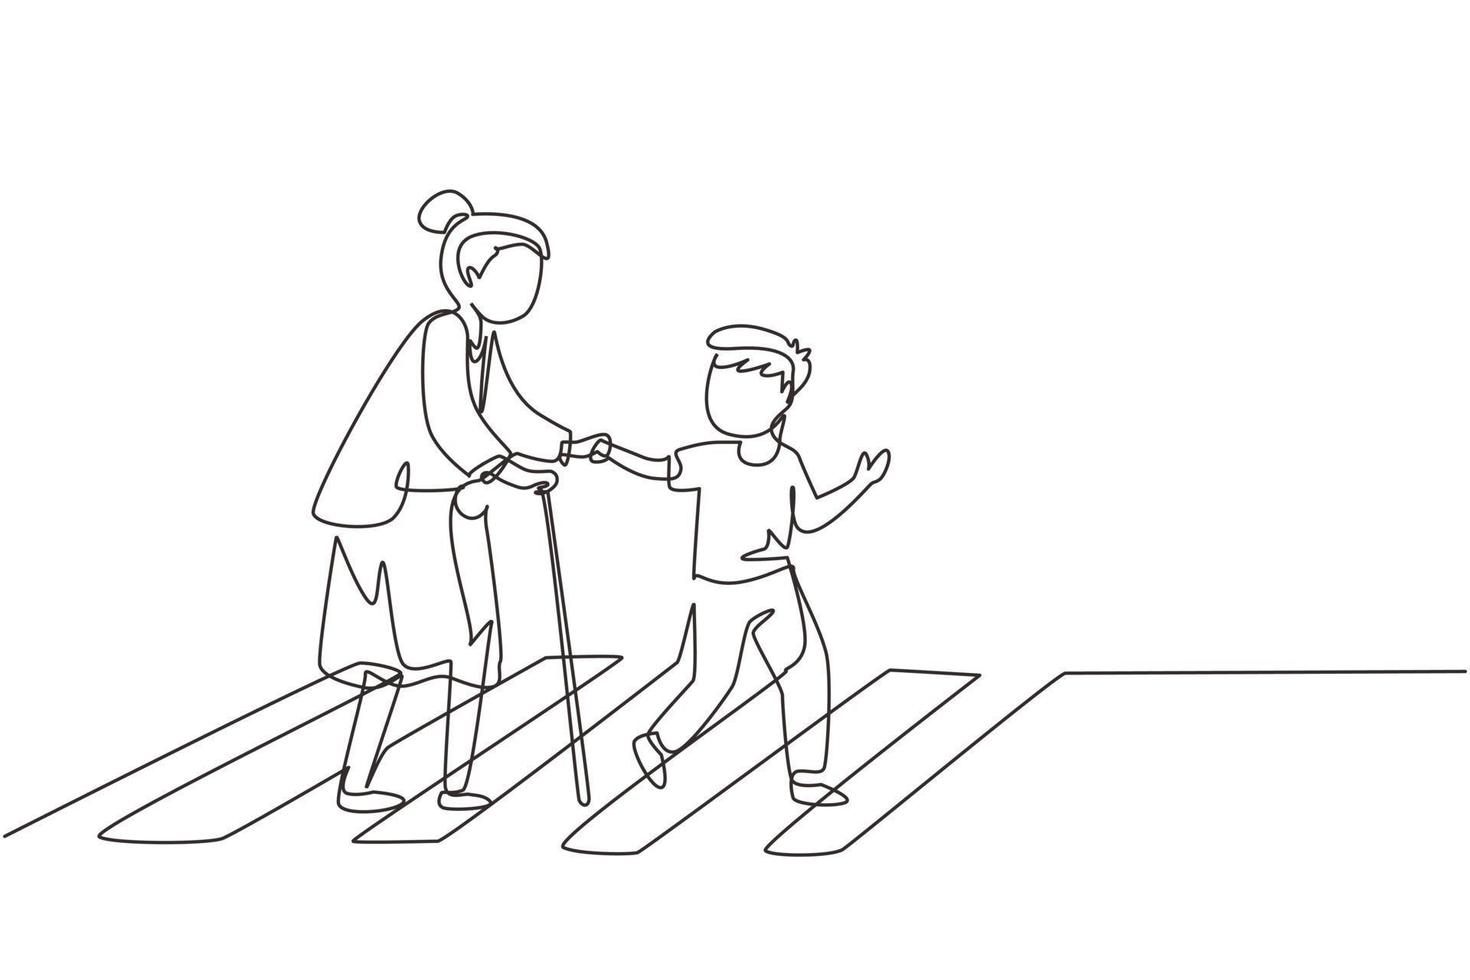 enkele doorlopende lijntekening beleefde jongen helpt grootmoeder de straat over te steken. welgemanierde kinderbijstand aan bejaarde vrouw. kind en oudere vrouw gaan samen op zebrapad. één regel grafisch ontwerp vector